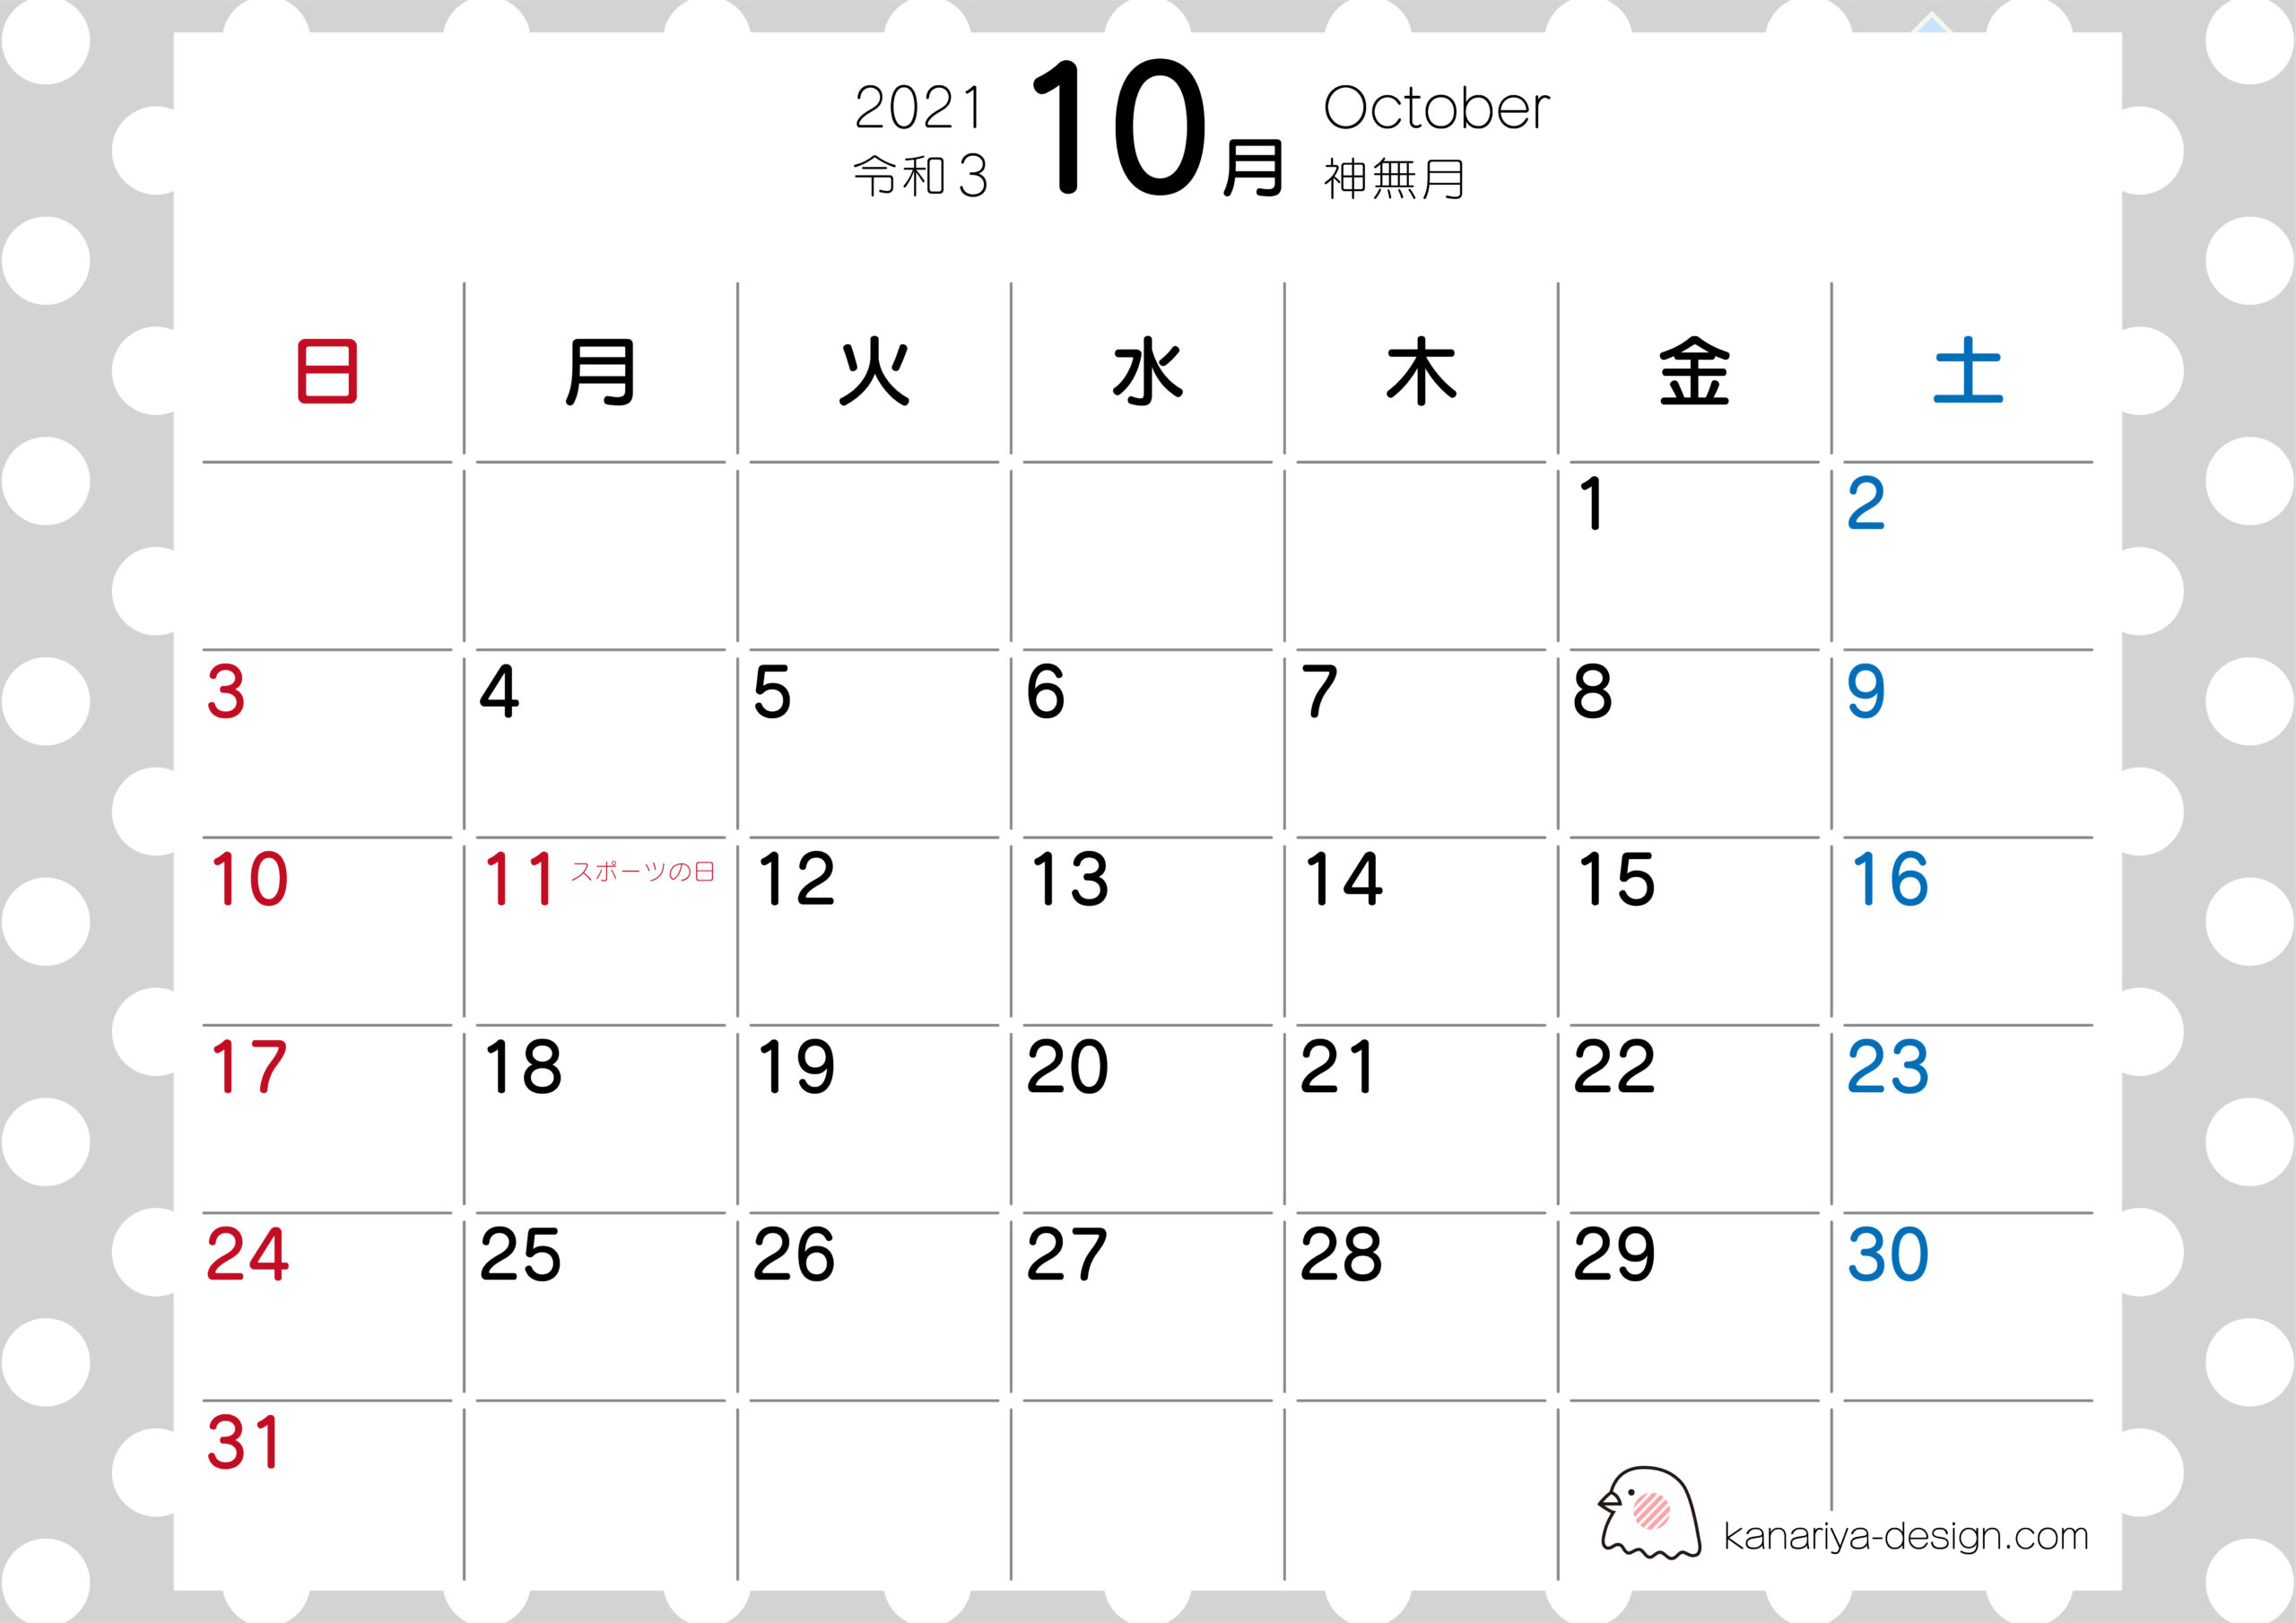 0以上 カレンダー 無料 かわいい 21 プリントアウト カレンダー 21 無料 かわいい Apixtursaeu8iyx